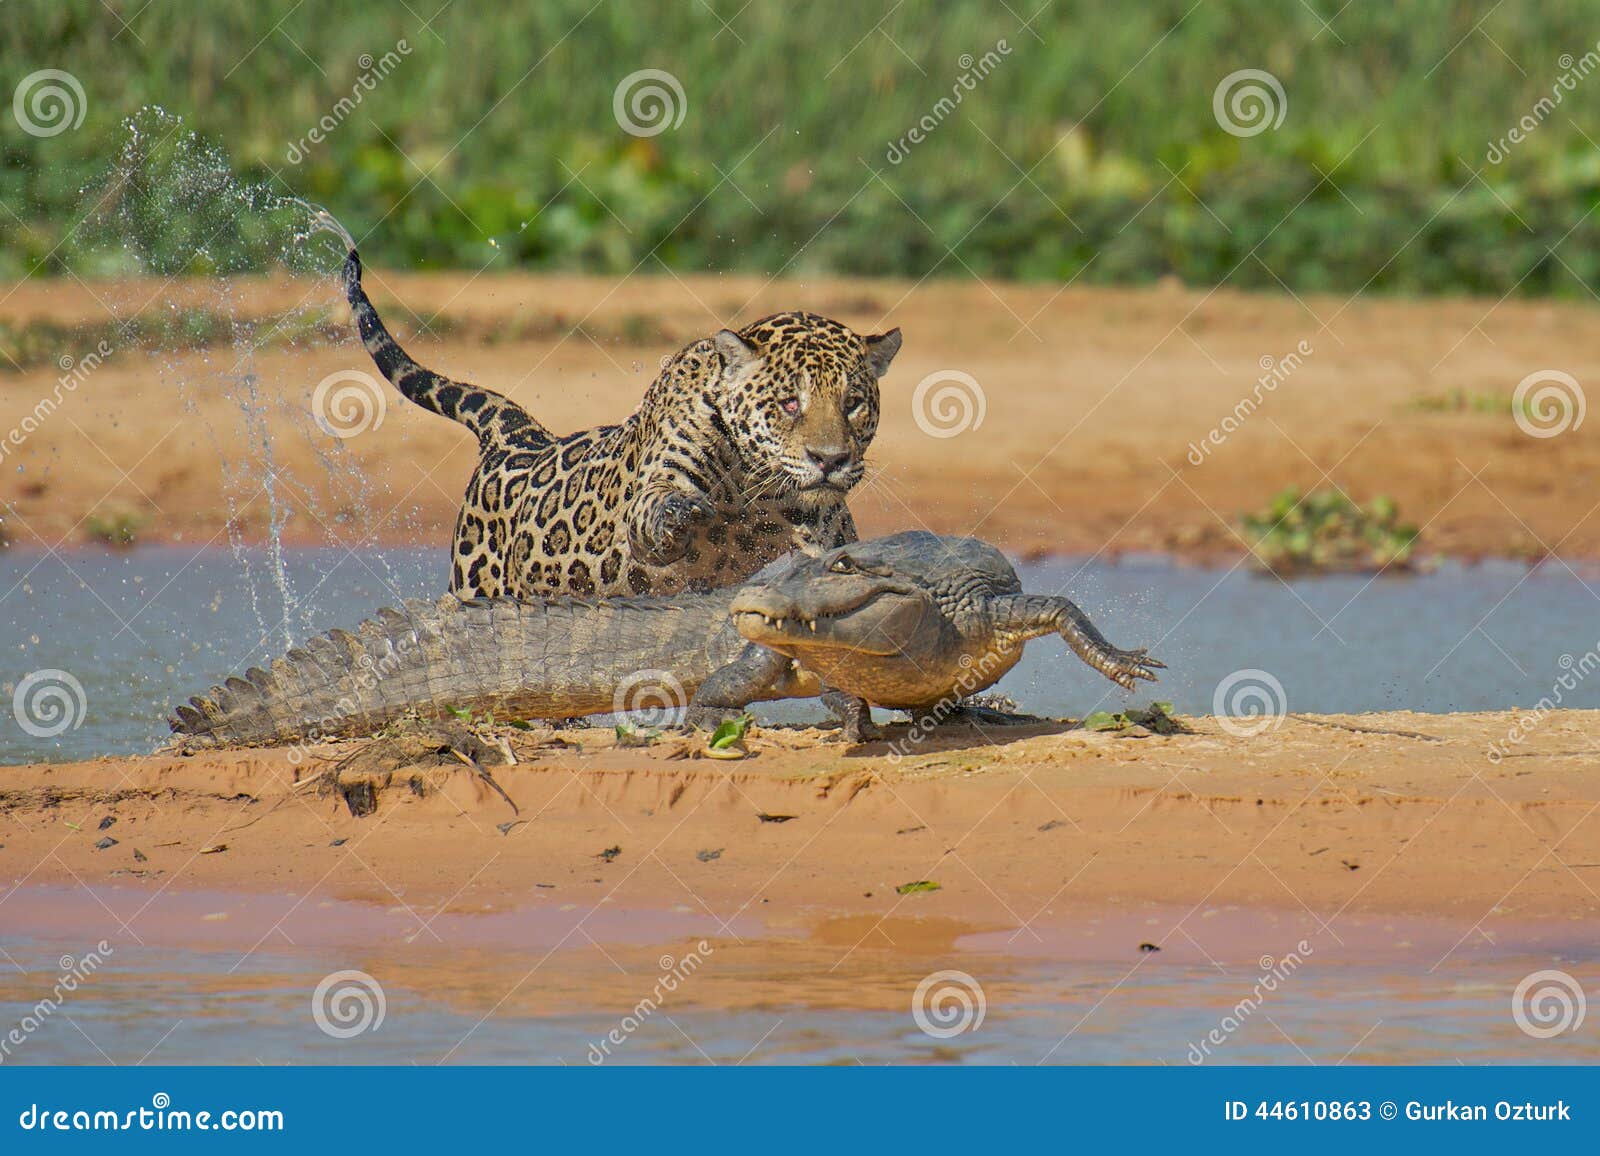 jaguar attacking cayman